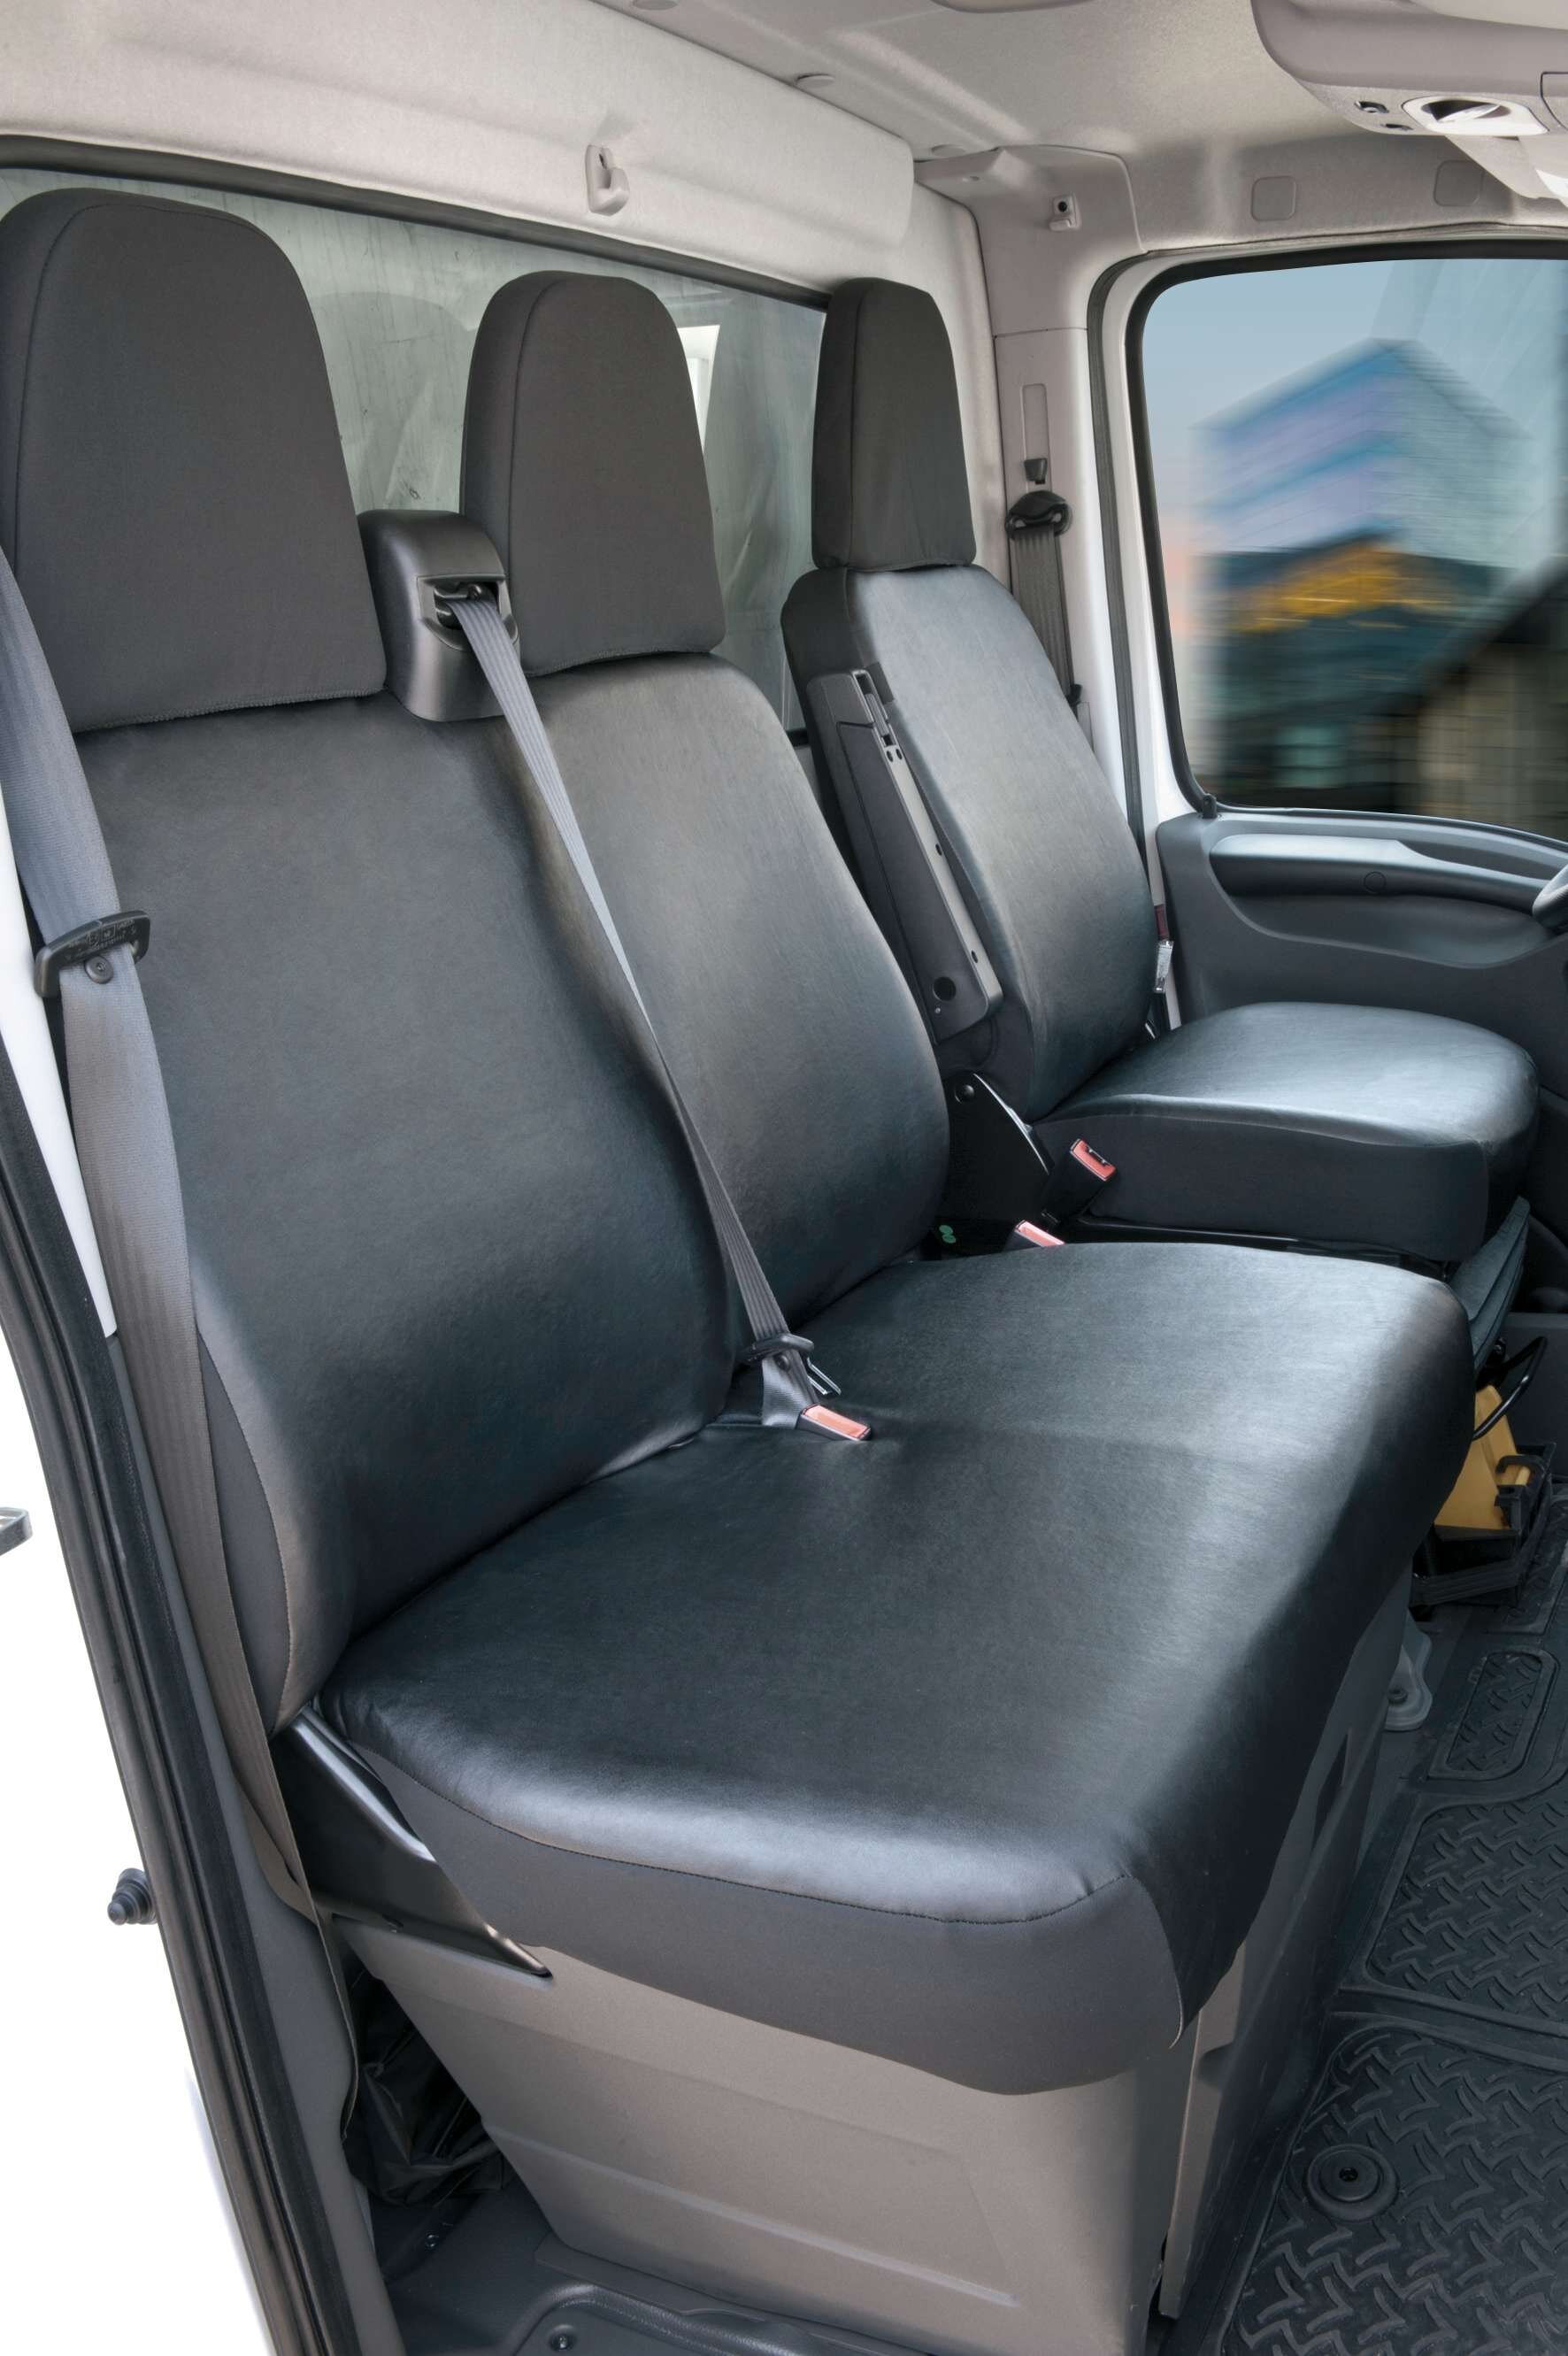 Housse de siège Transporter en simili cuir pour Fiat Ducato, siège simple et double